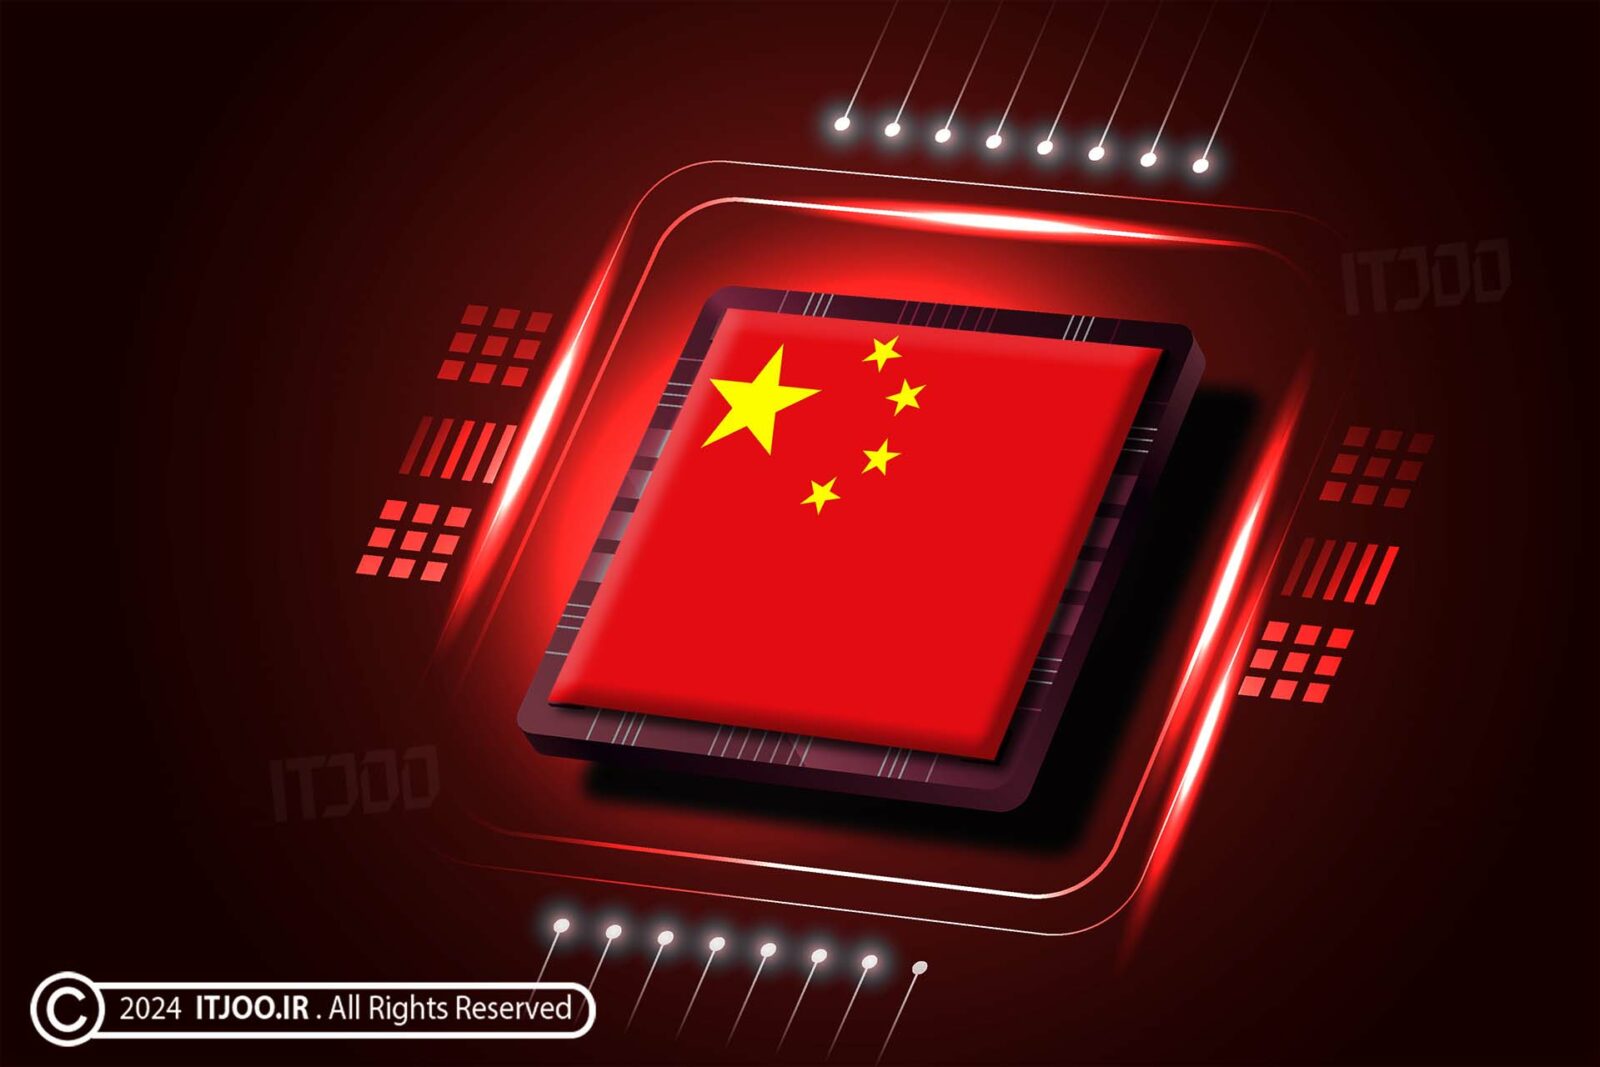 سی پی یو چینی - پردازنده و تراشه ساخت چین